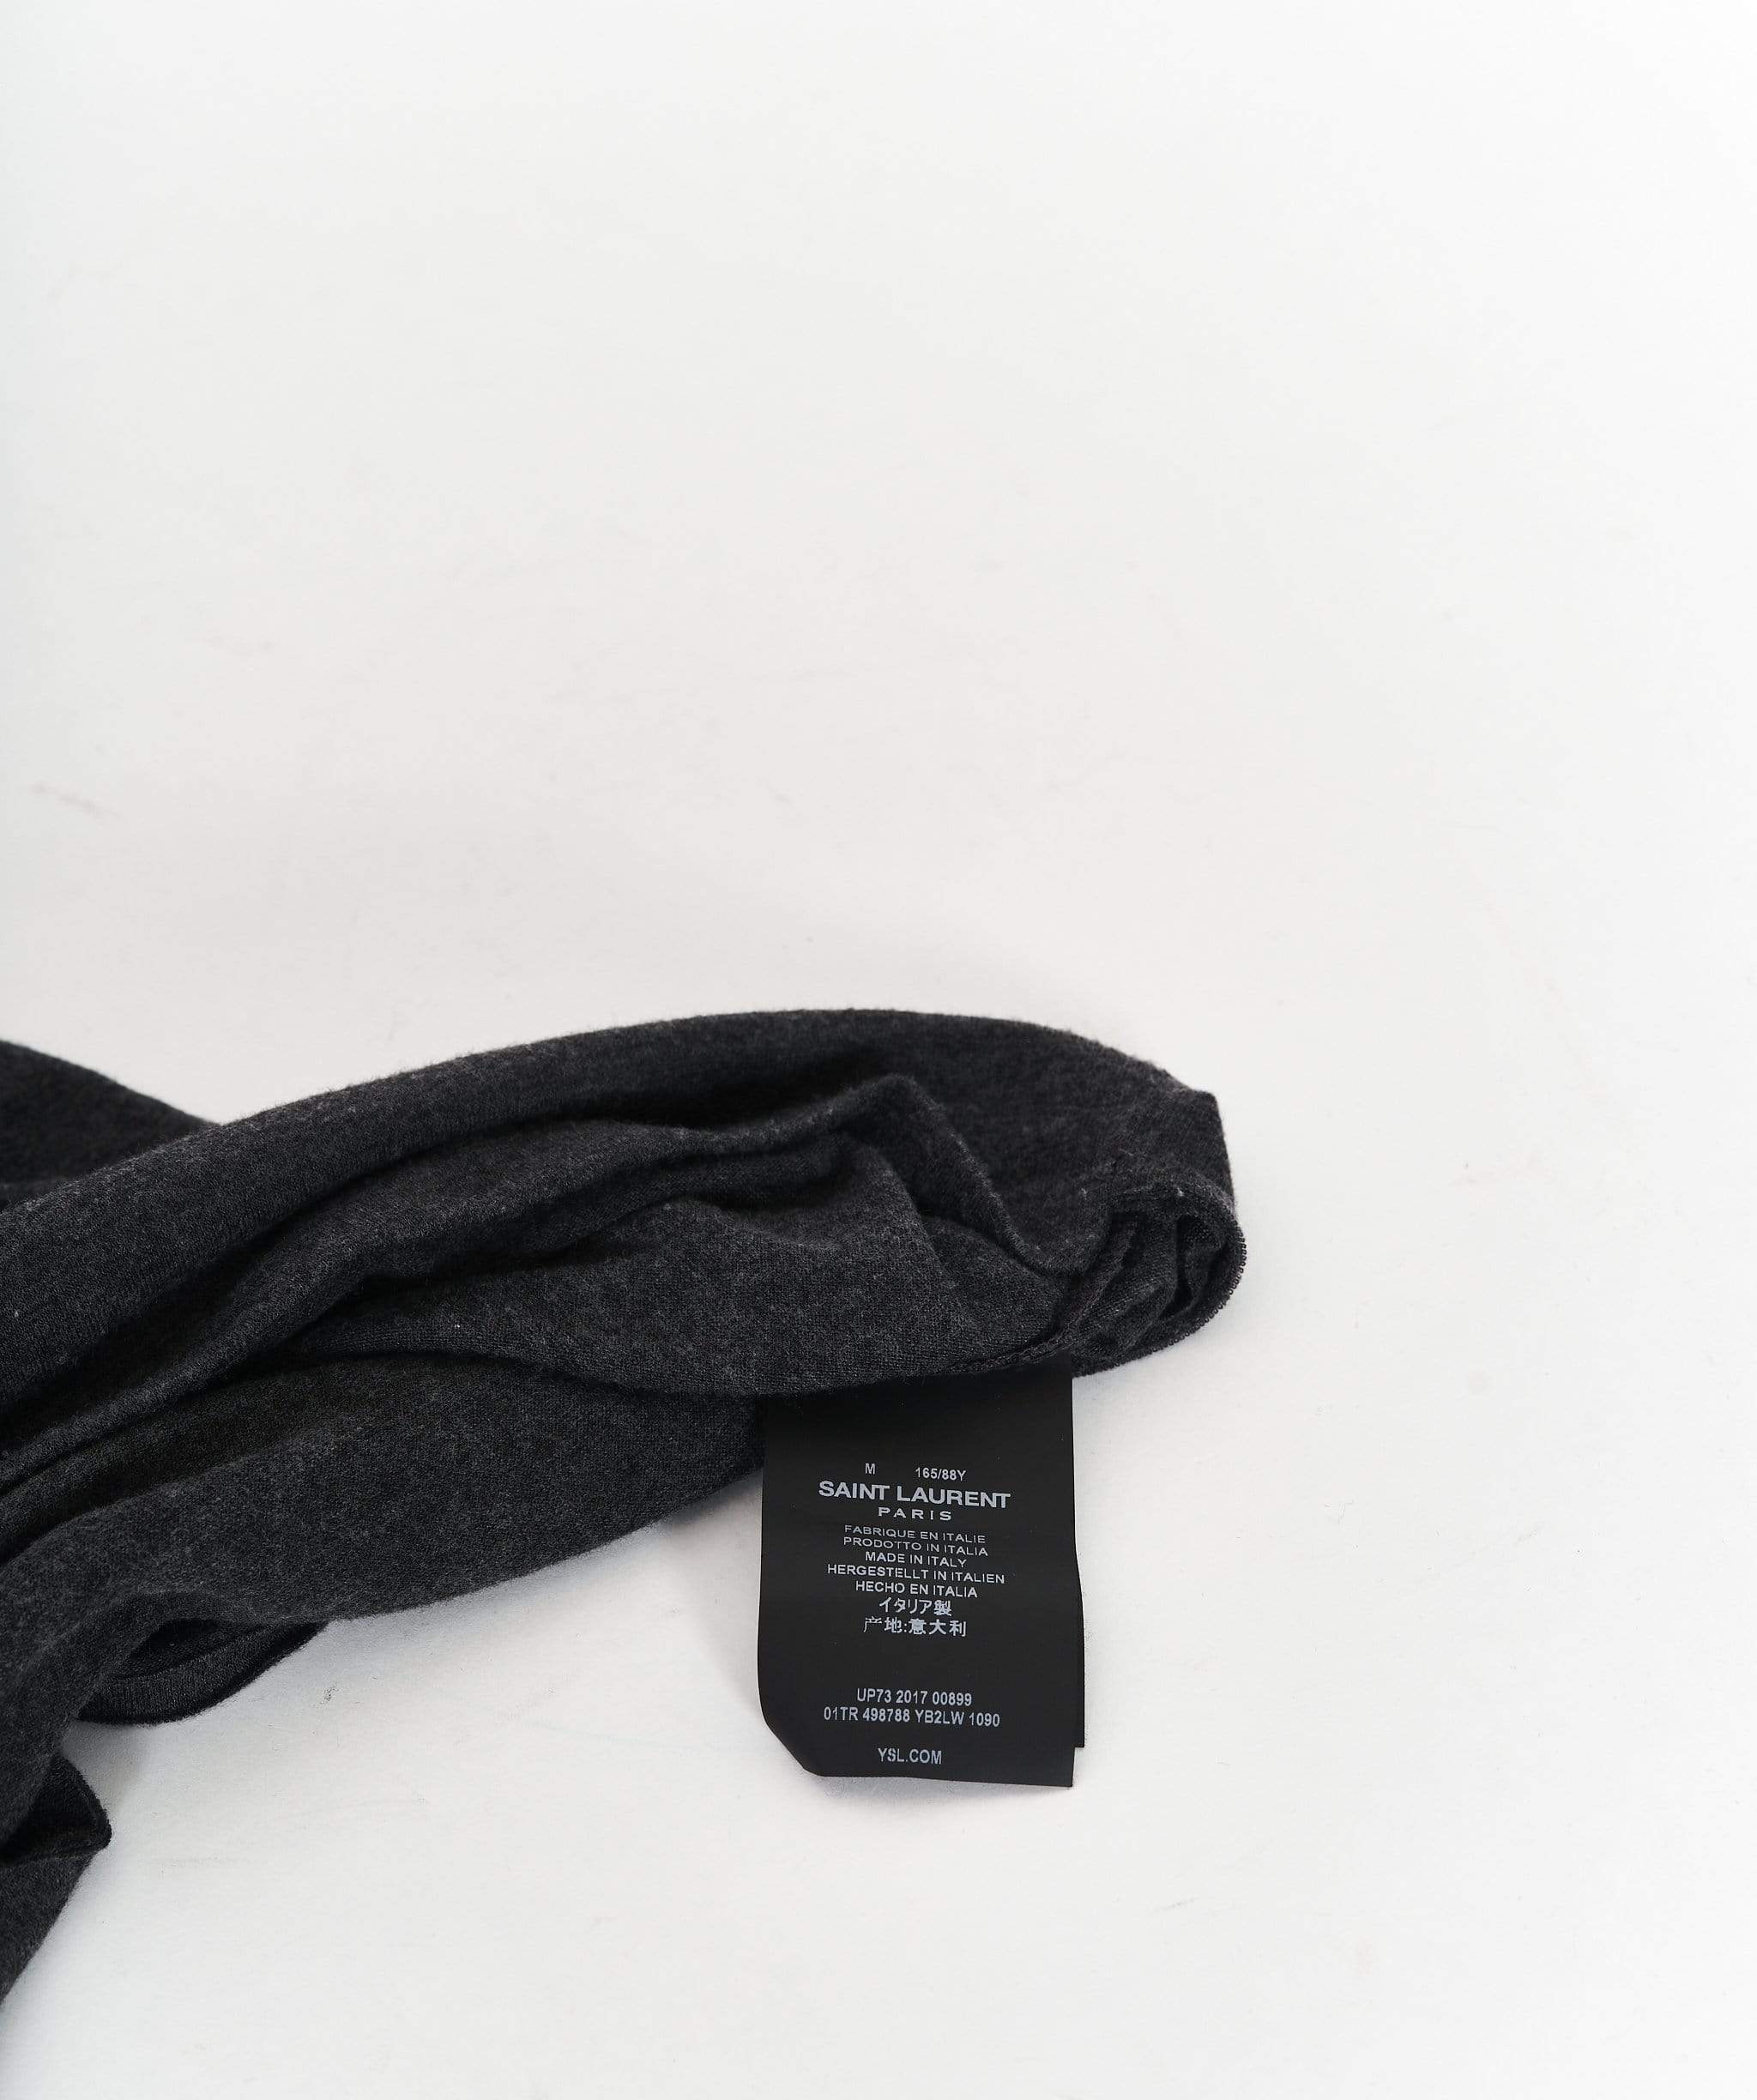 Yves Saint Laurent Saint Laurent Grey Band T-shirt size M